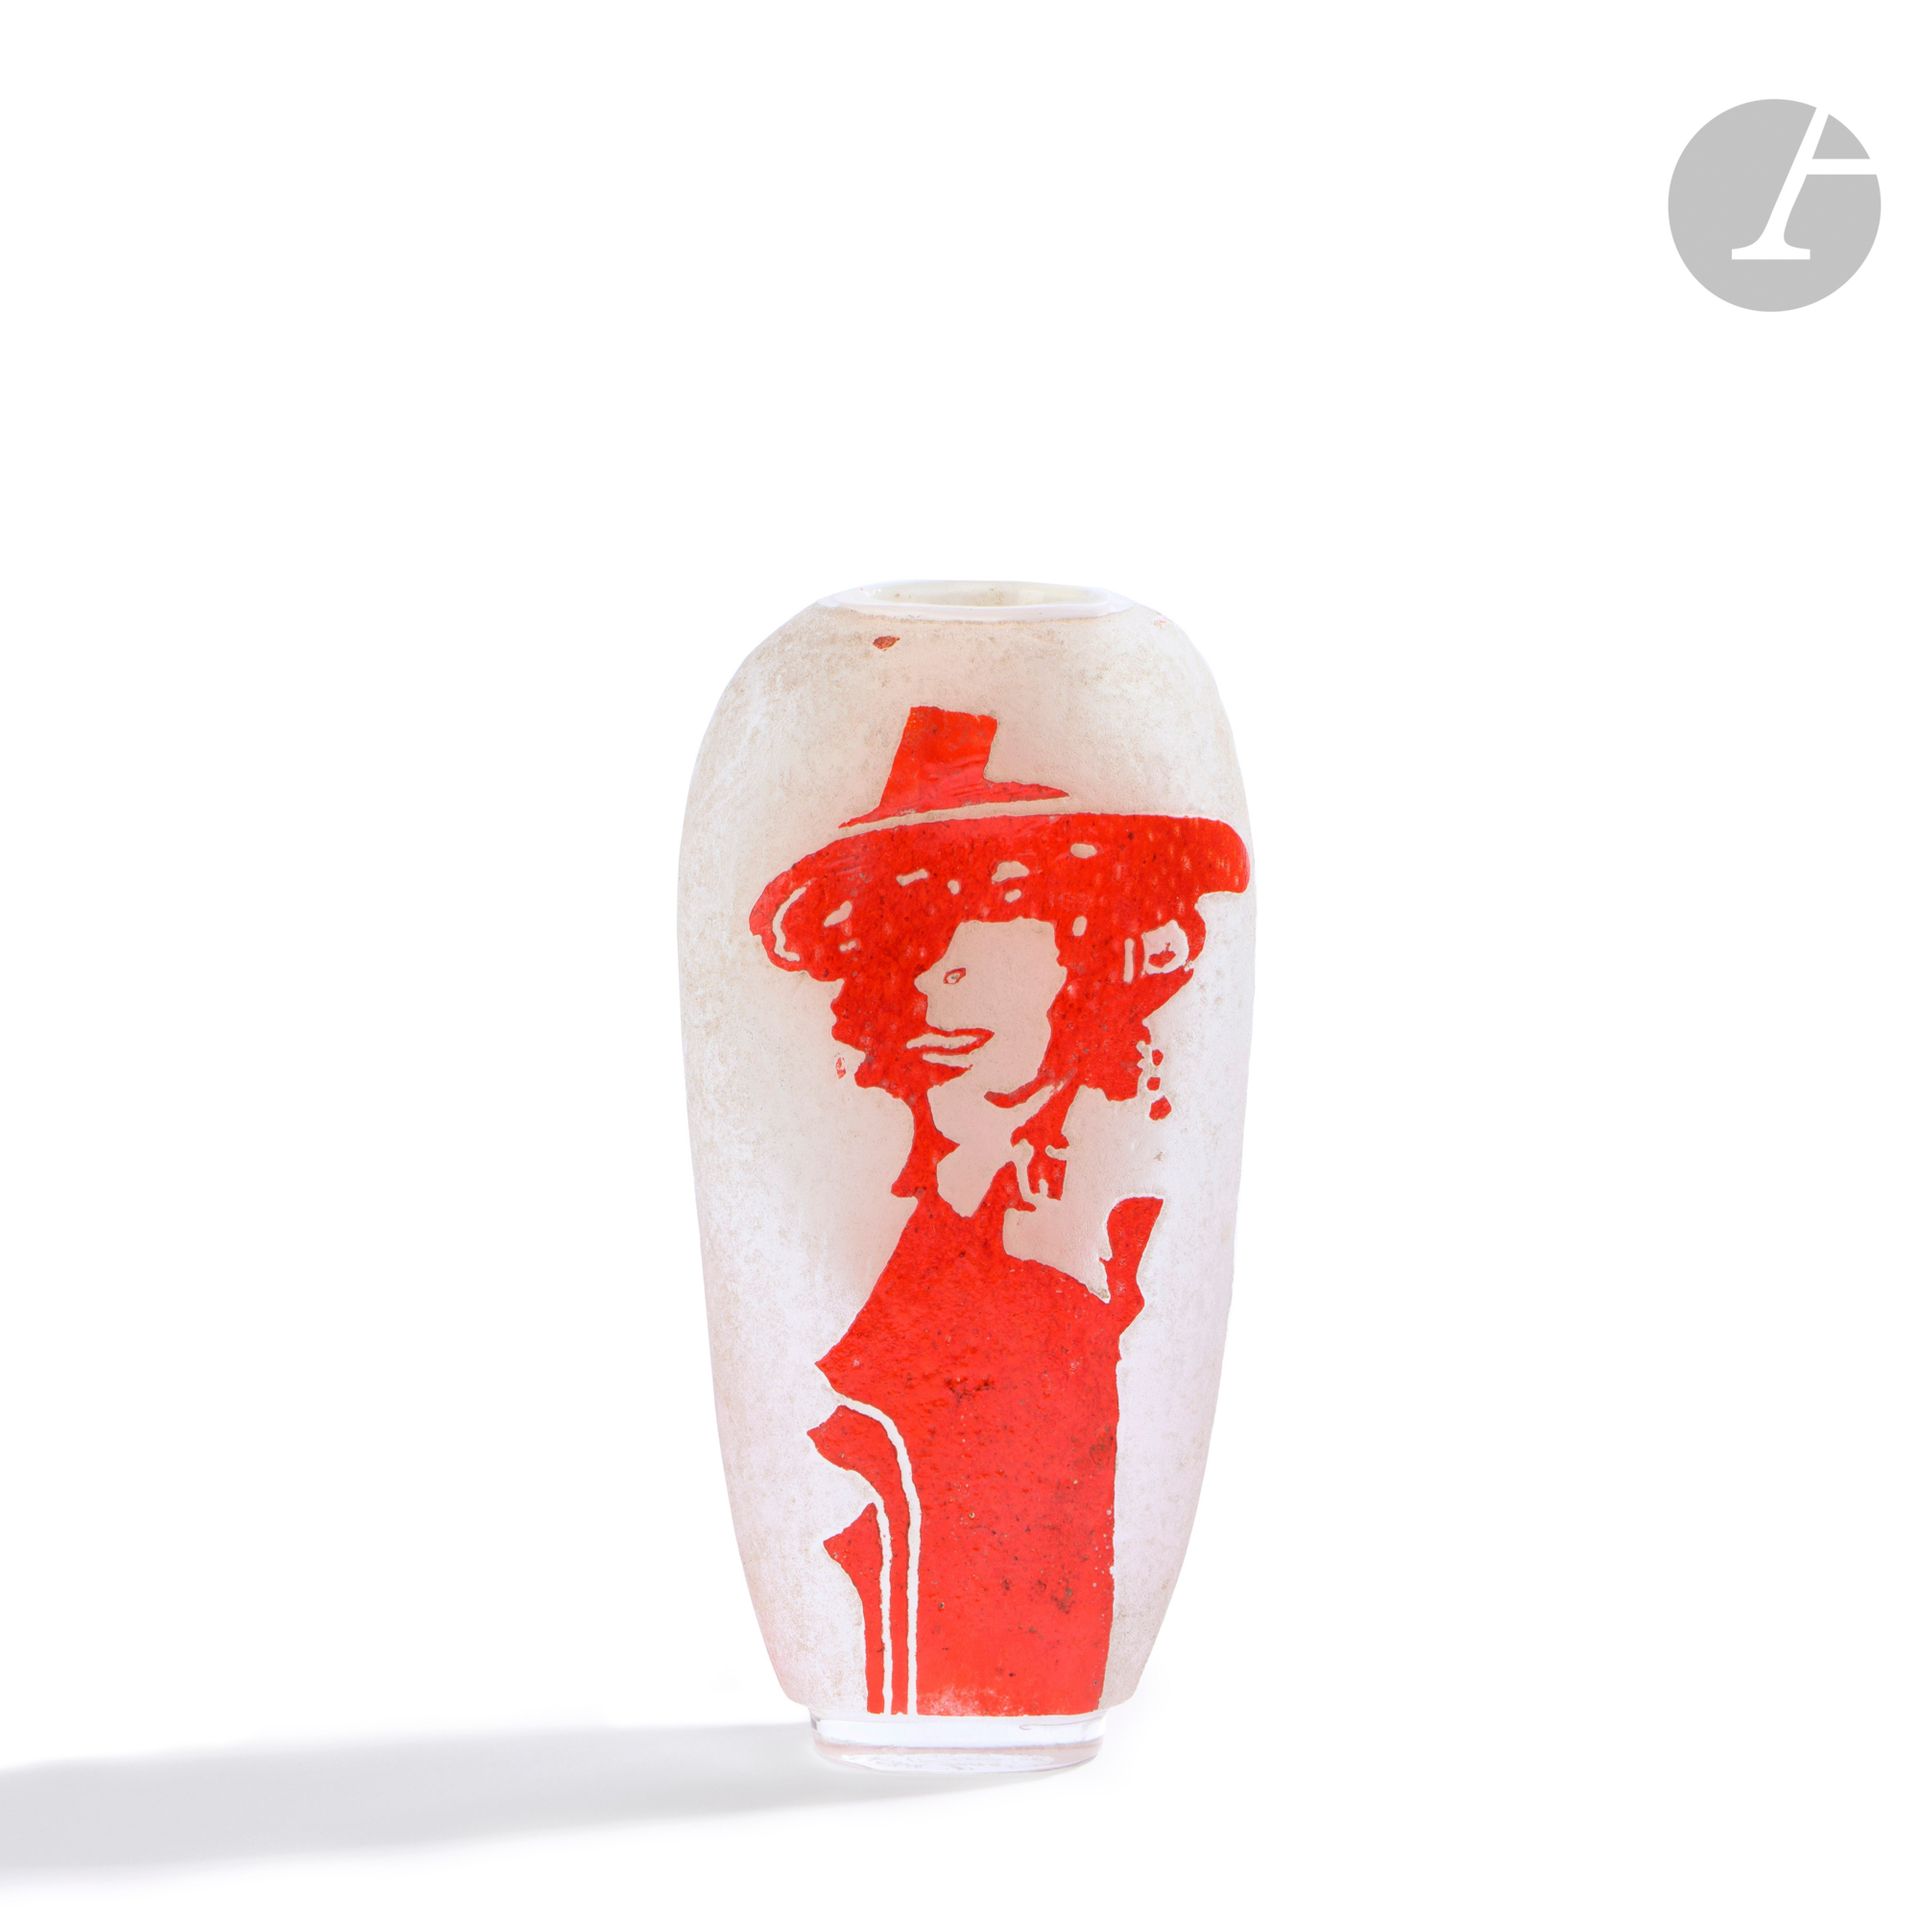 Null 勒内-德尼尔（法国，生于1947年）
带帽子的女人
酸性吹制的玻璃花瓶，有一个红色的人物。底座下有签名、字样和日期，1989年。高24厘米 - 宽11&hellip;